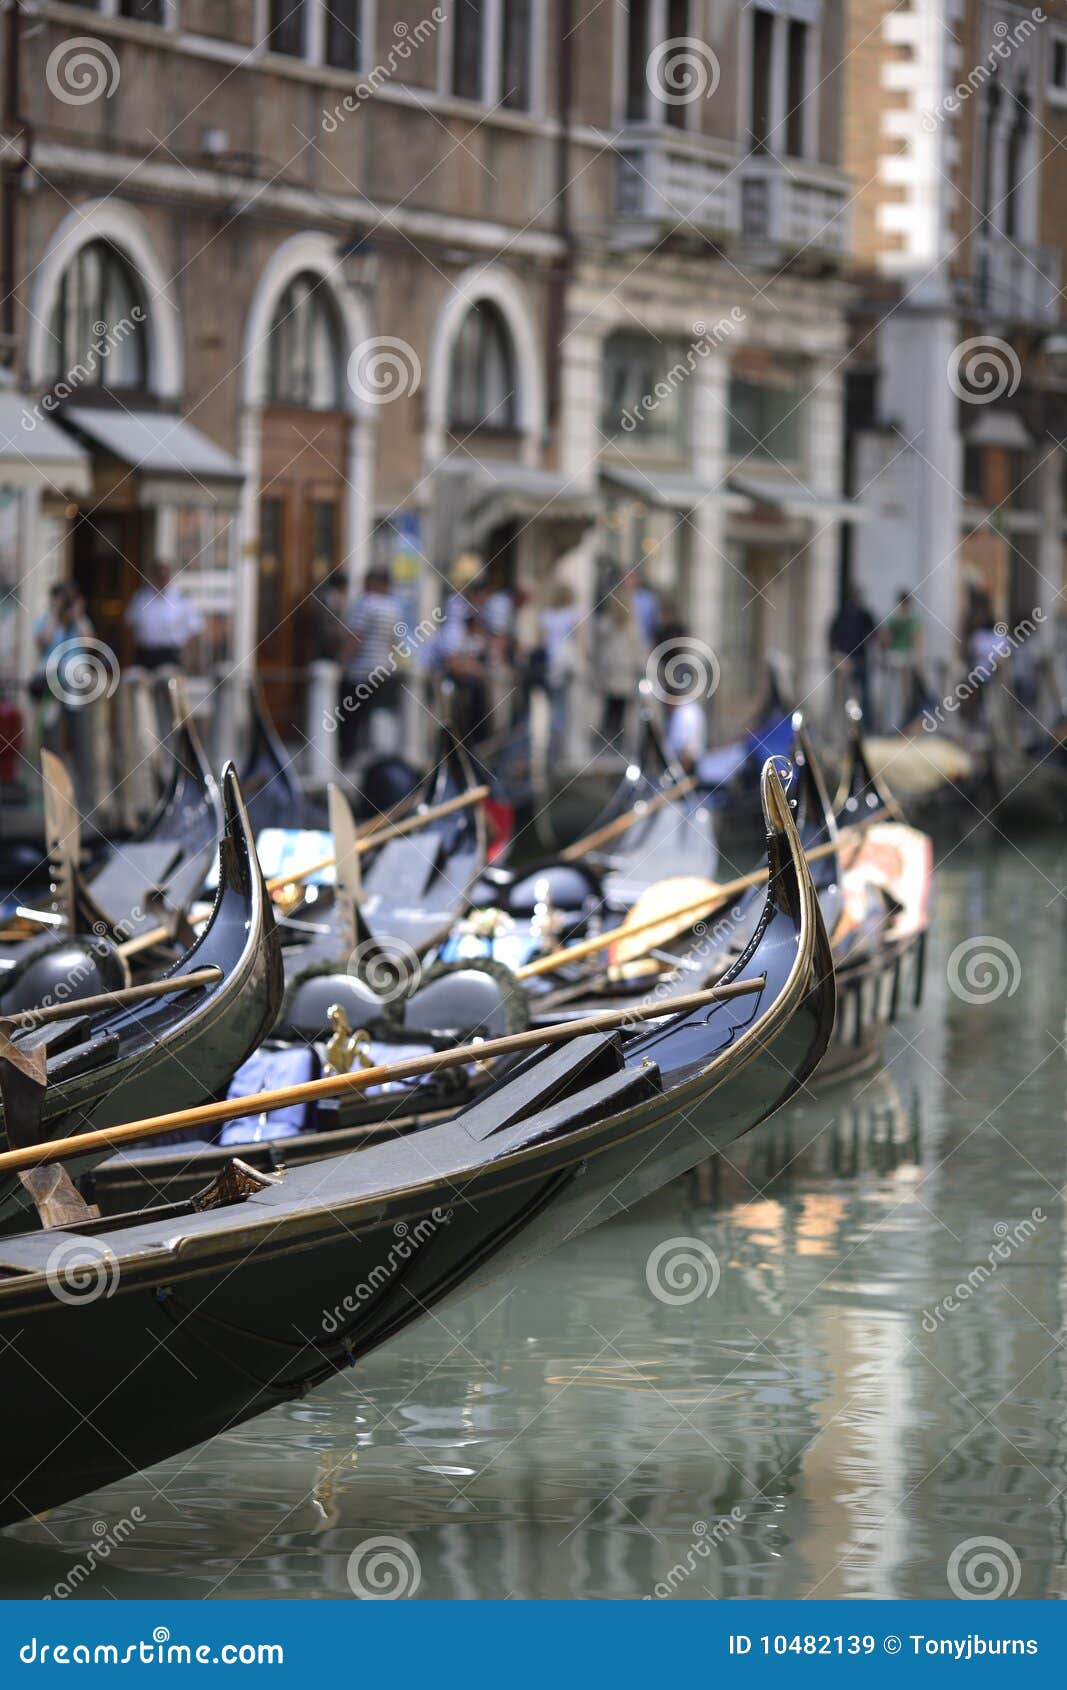 Venetian gondola boats stock image. Image of sightseeing - 10482139